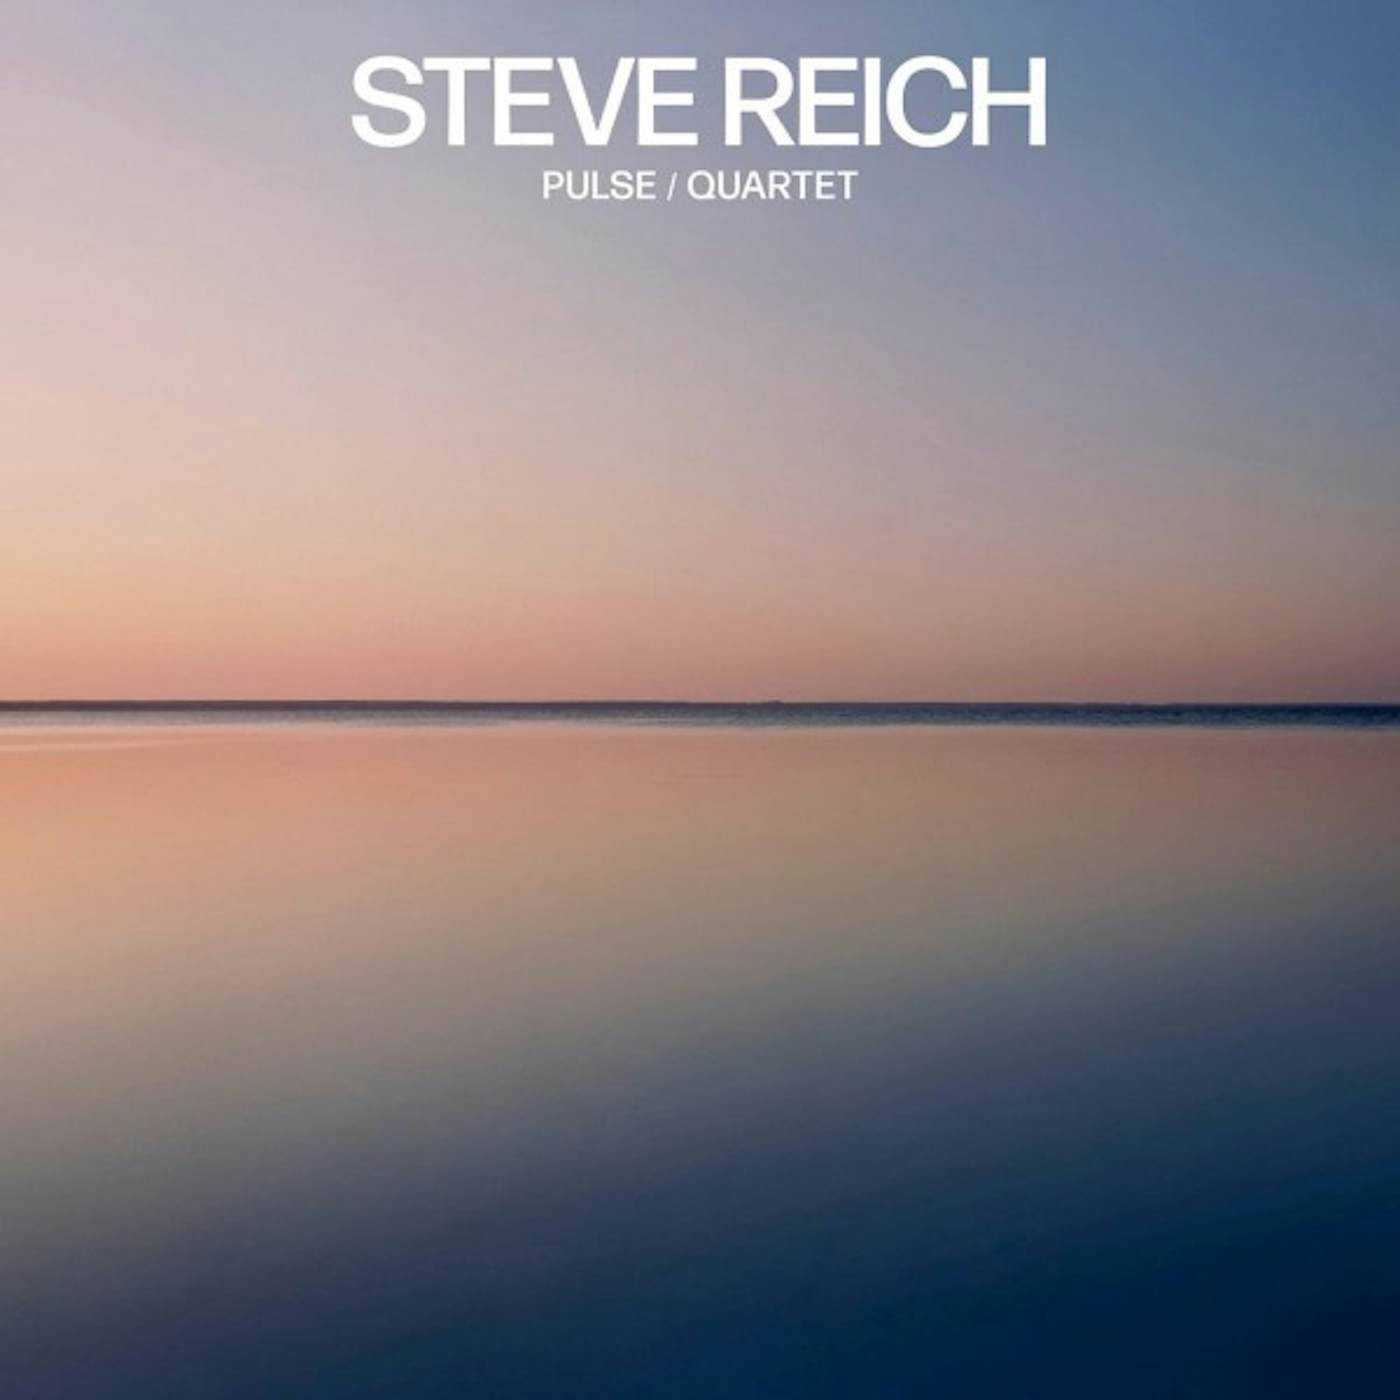 Steve Reich PULSE / QUARTET Vinyl Record